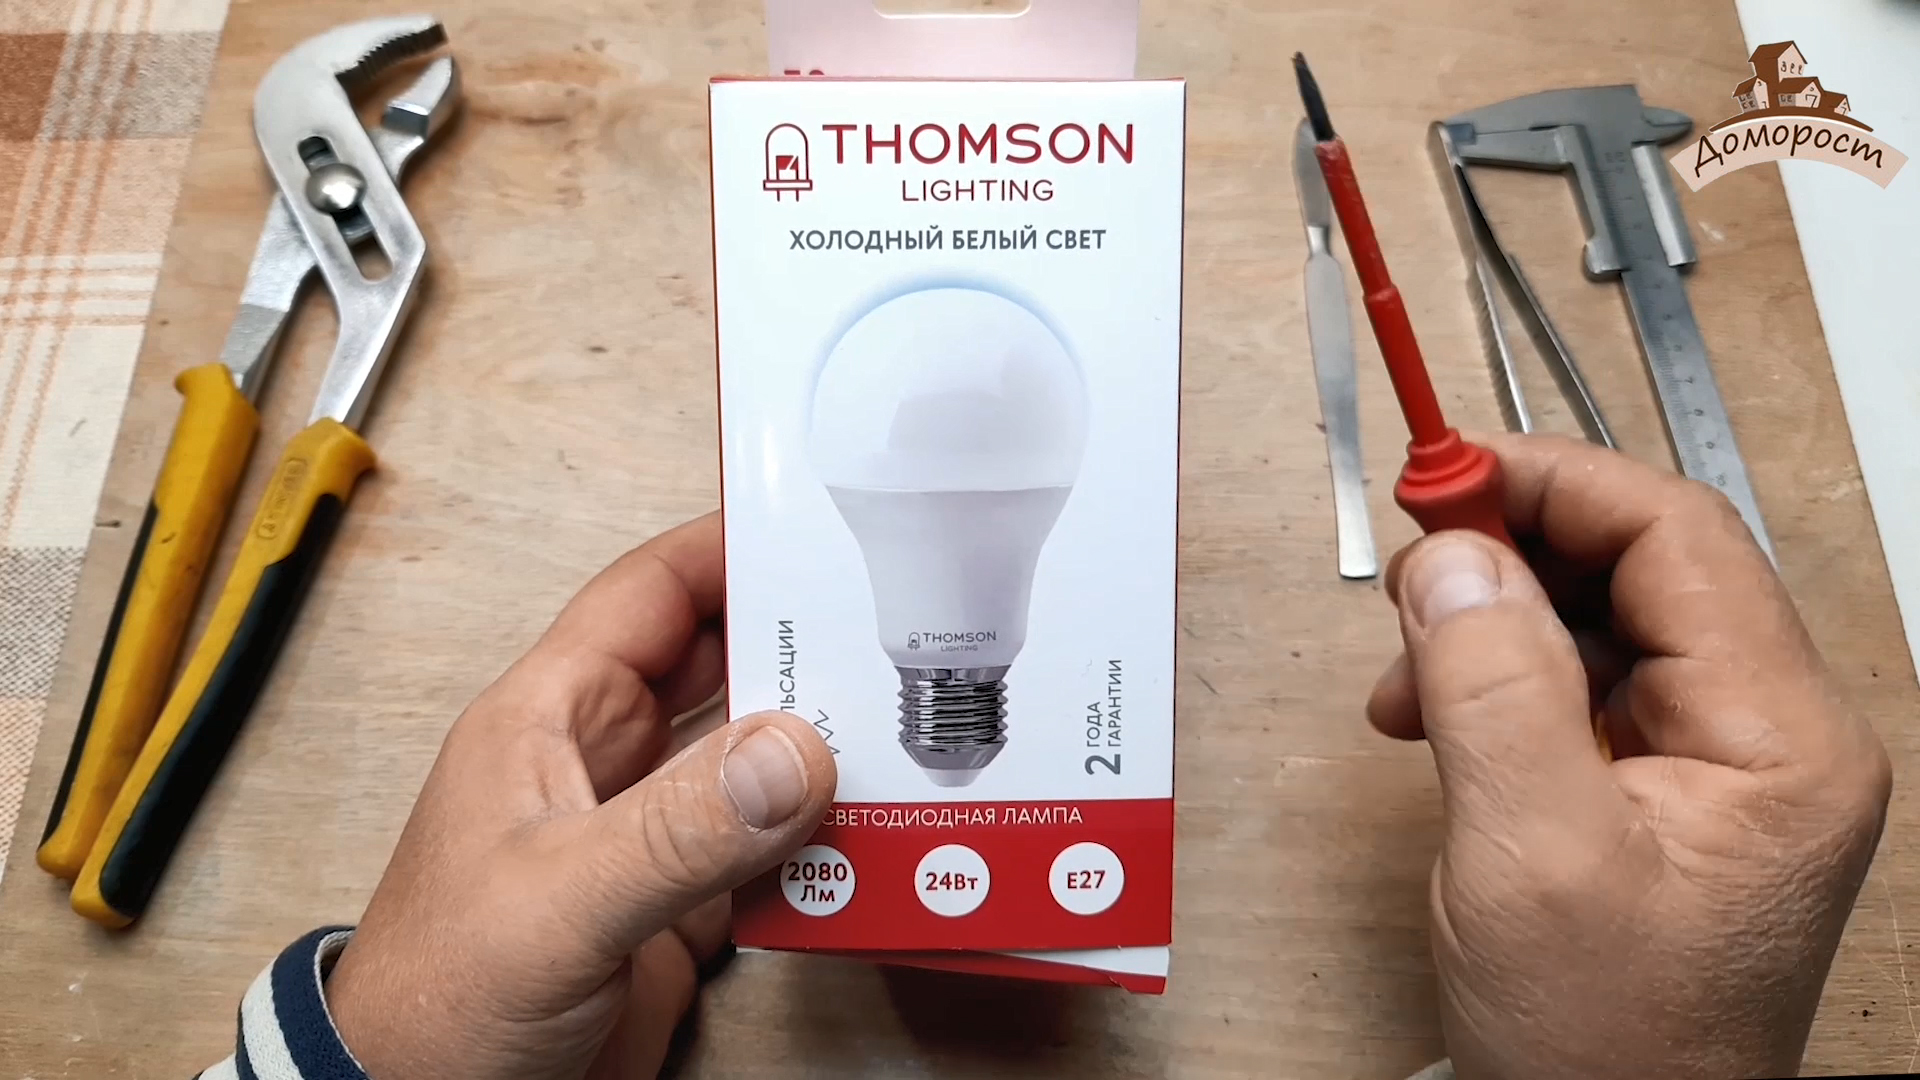 «Мутные» перспективы производителя ламп Thomson на примере лампочки 24Вт с цоколем е27 - 5